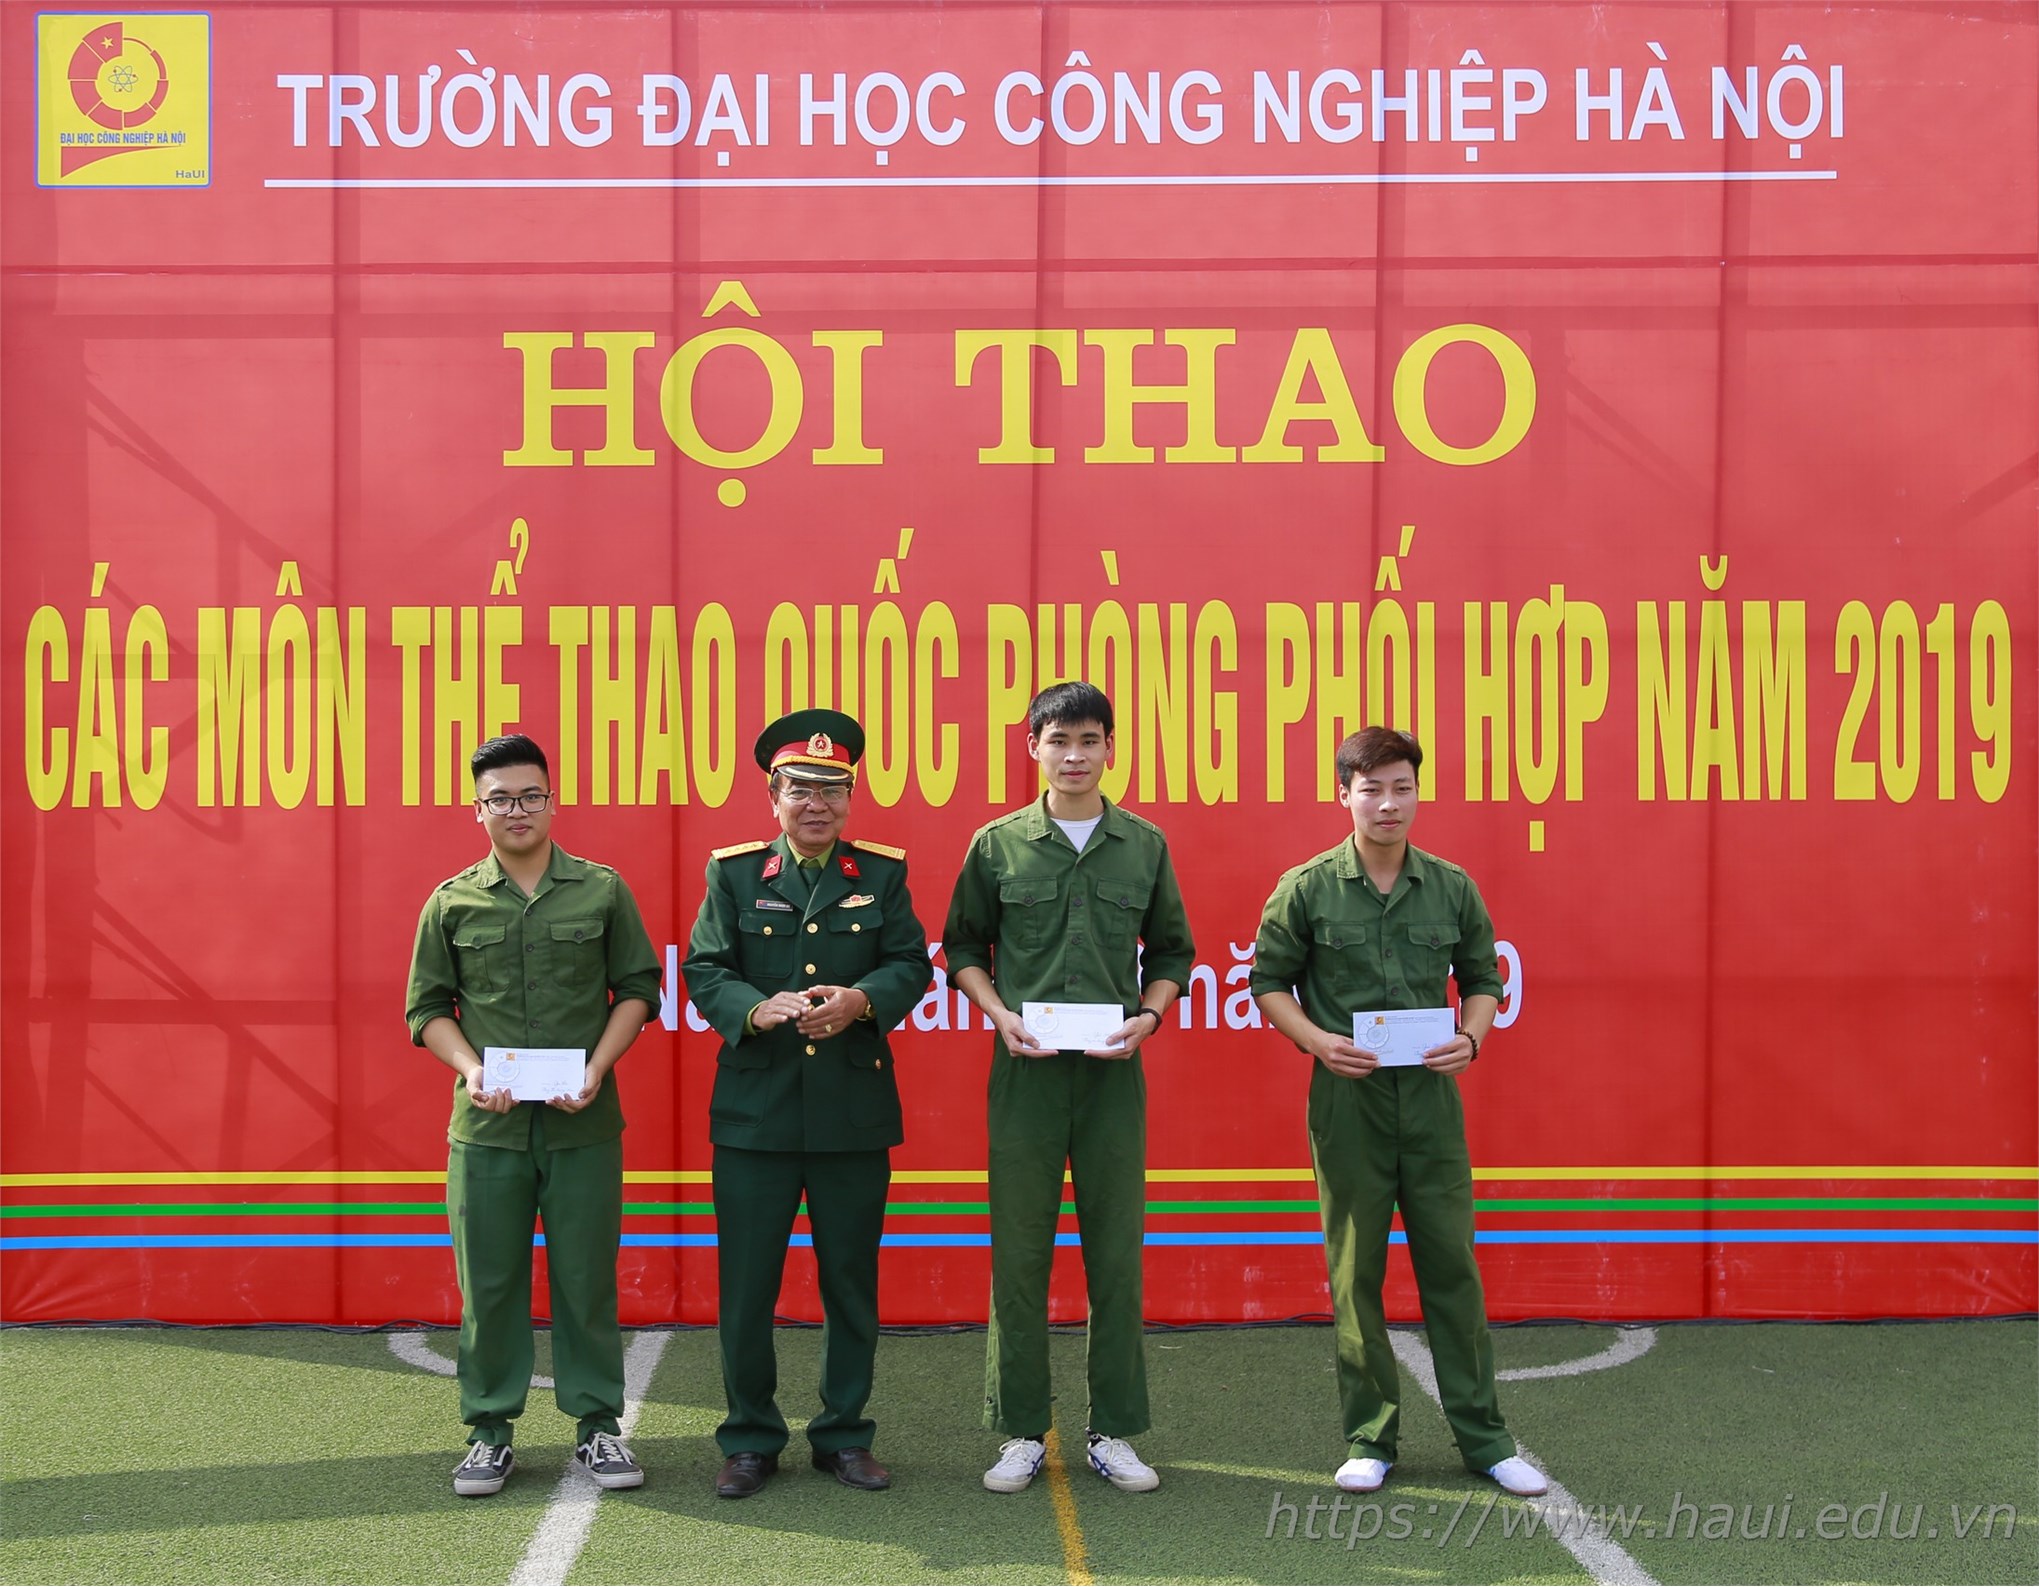 Hội thao các môn thể thao quốc phòng phối hợp trường Đại học Công nghiệp Hà Nội năm 2019